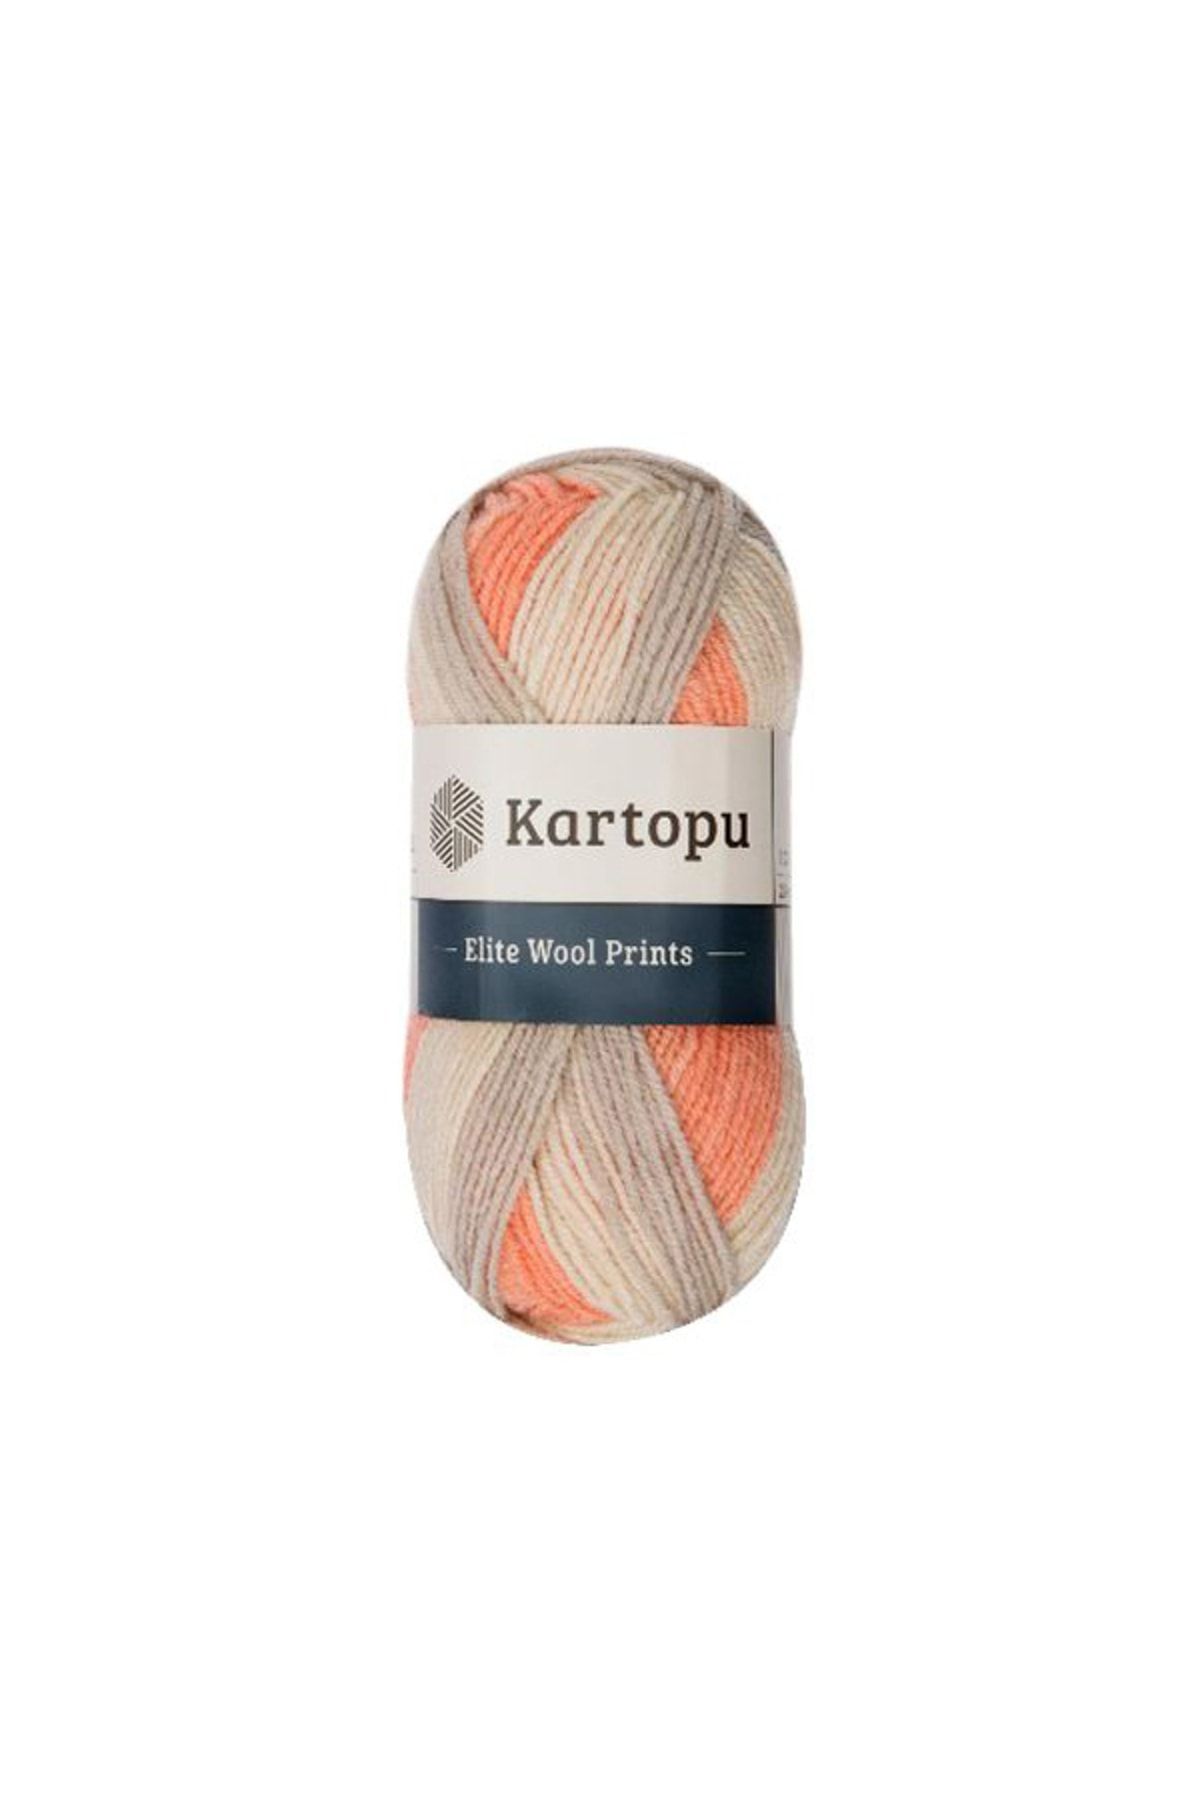 Kartopu Elite Wool Prints Yünlü Örgü Ipi, Ebrulu Renkler 1 Yumak, Yaklaşık 220 Metre, 100 gram